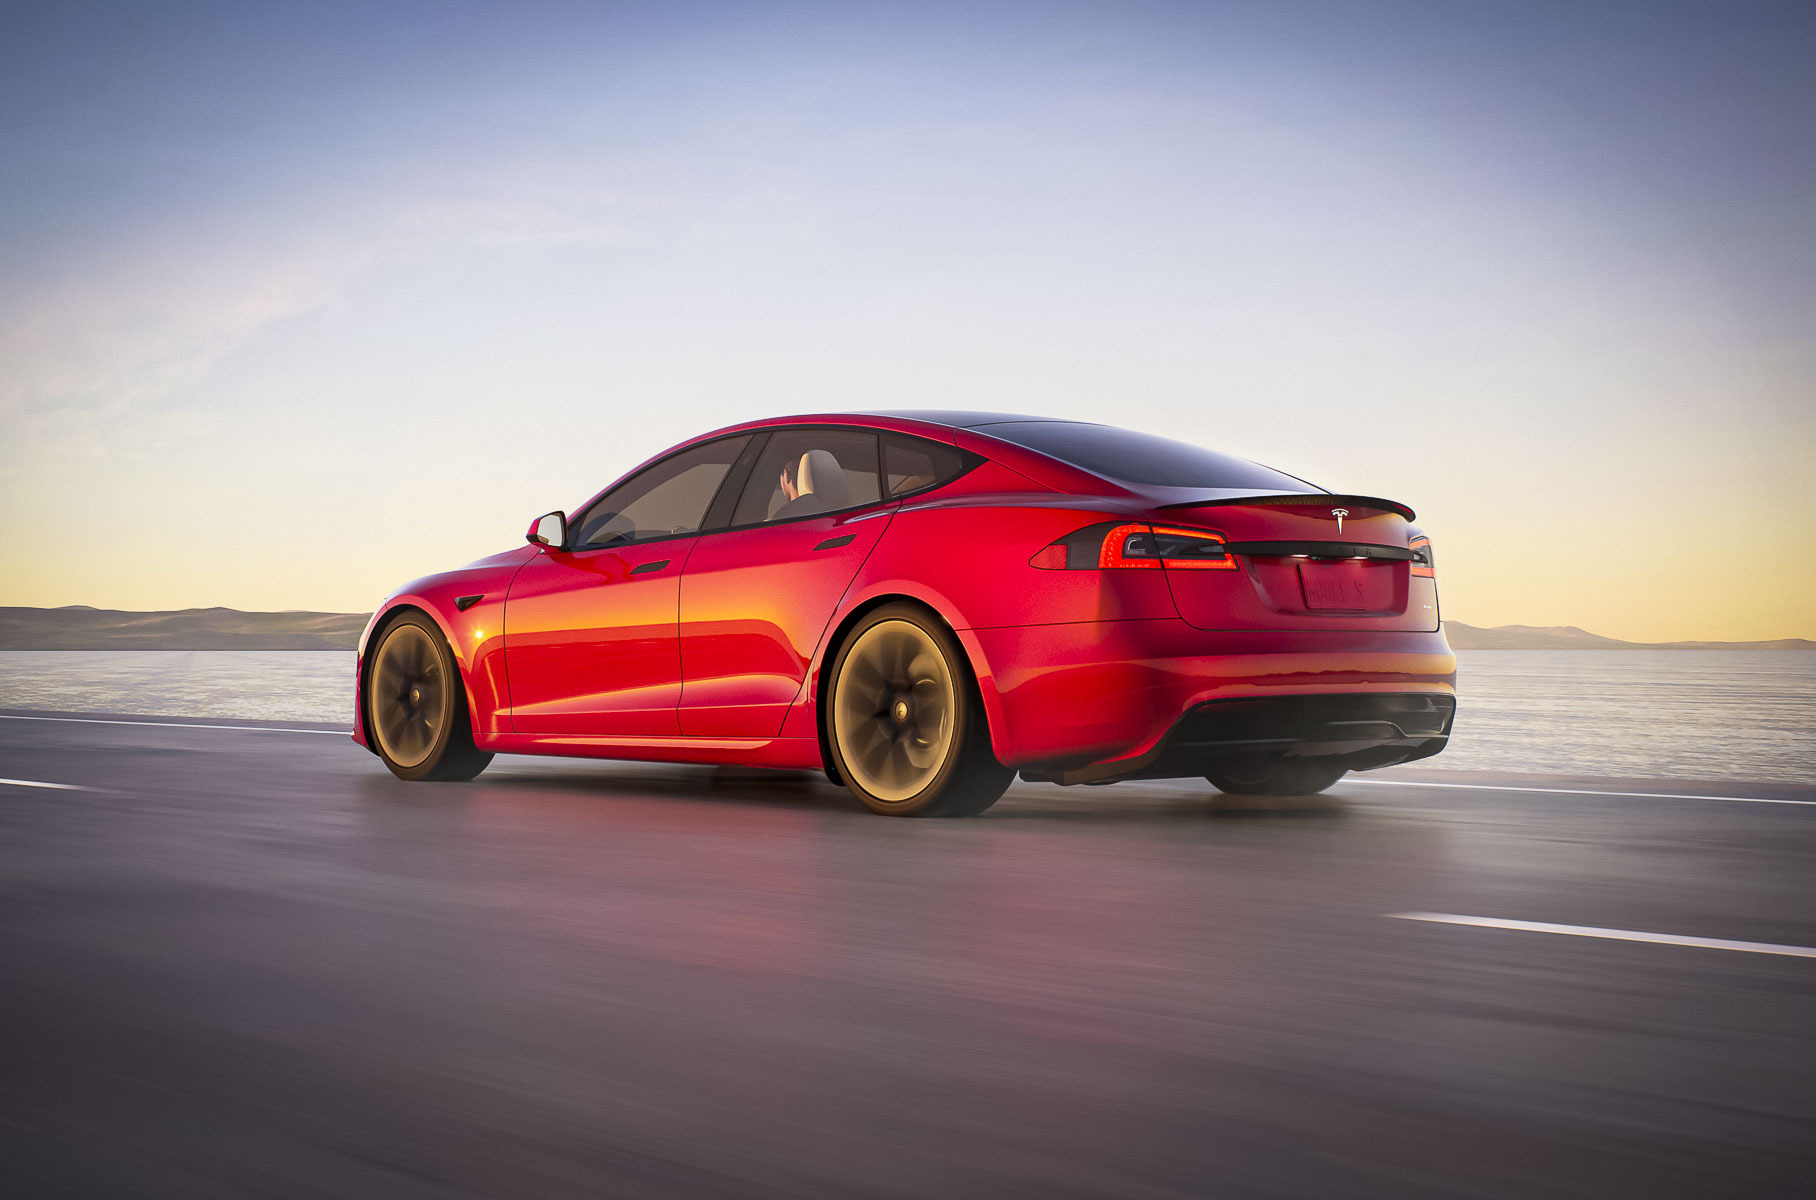 Самая мощная Tesla Model S загорелась прямо во время движения